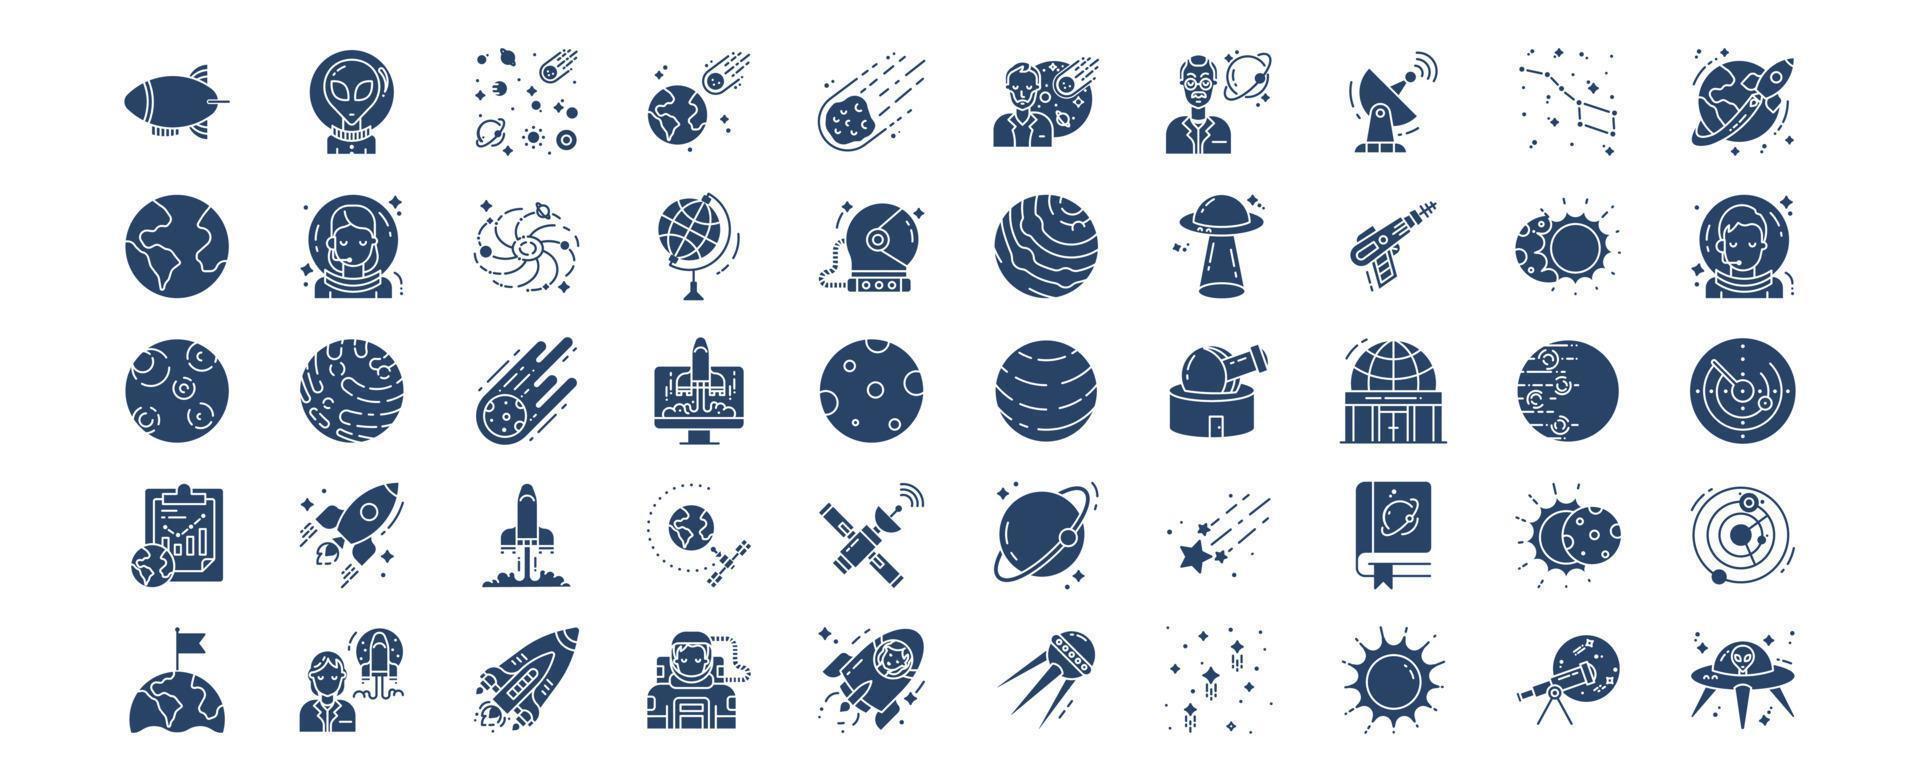 verzameling van pictogrammen verwant naar ruimte, inclusief pictogrammen Leuk vinden buitenaards wezen, asteroïde, natuurkundige, heelal en meer. vector illustraties, pixel perfect reeks